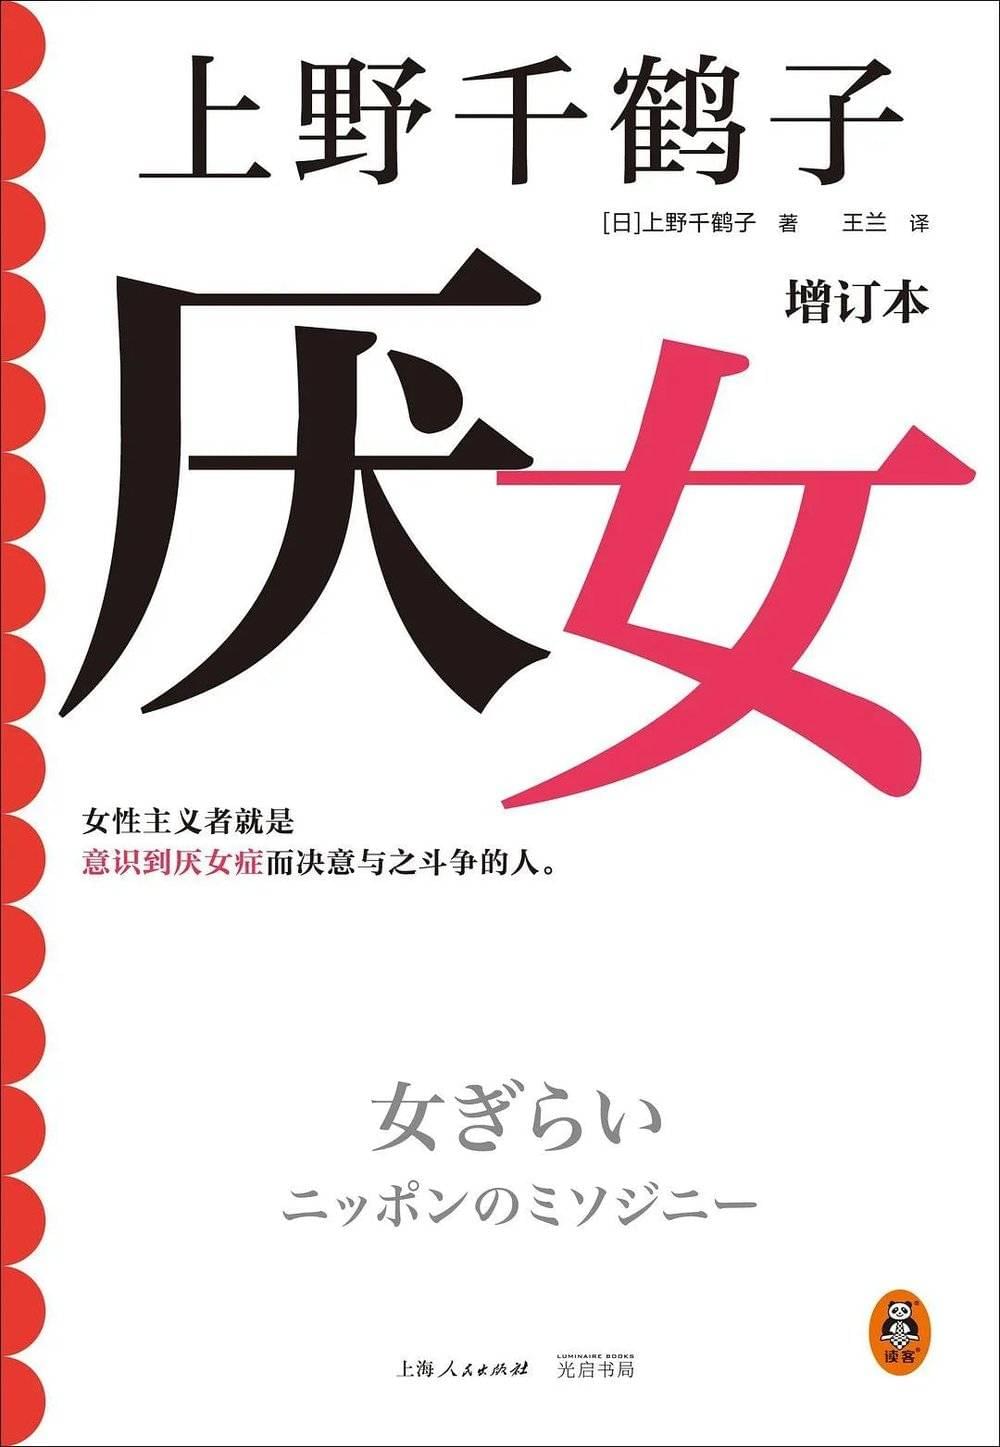 今年，上野千鹤子的热销书《厌女》在中国内地推出了增订本。<br>